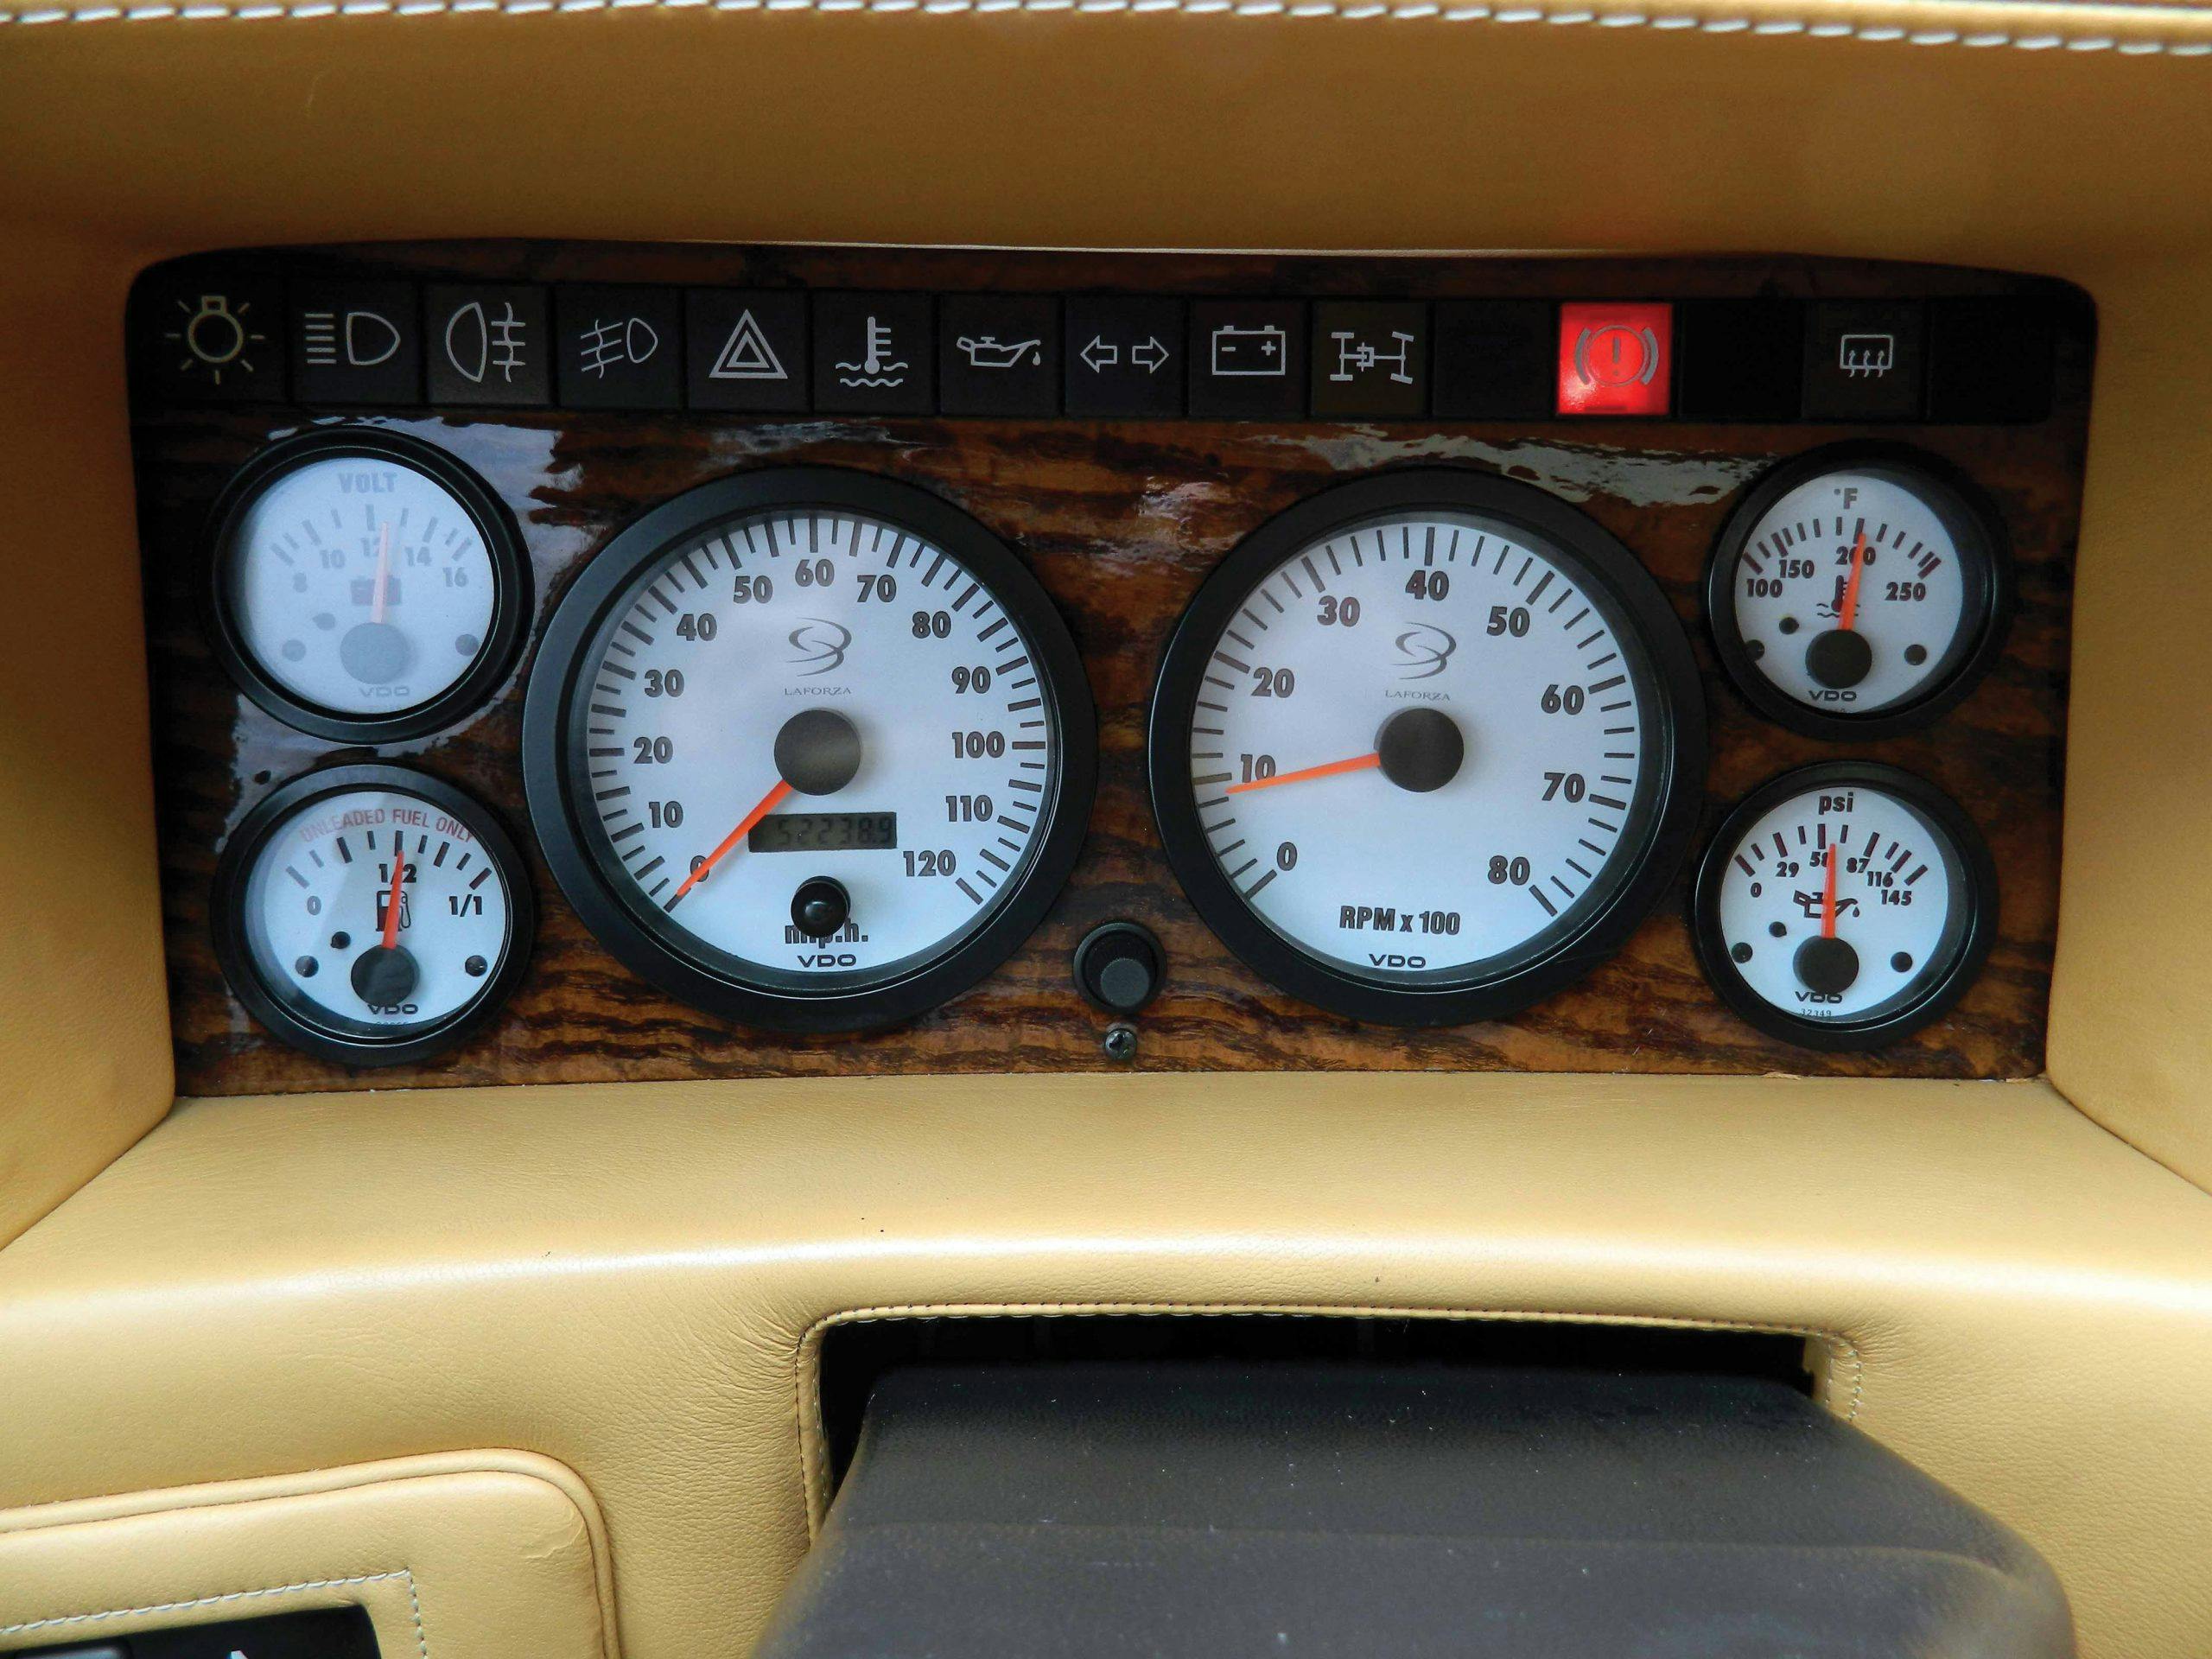 1998 Laforza Magnum interior gauges